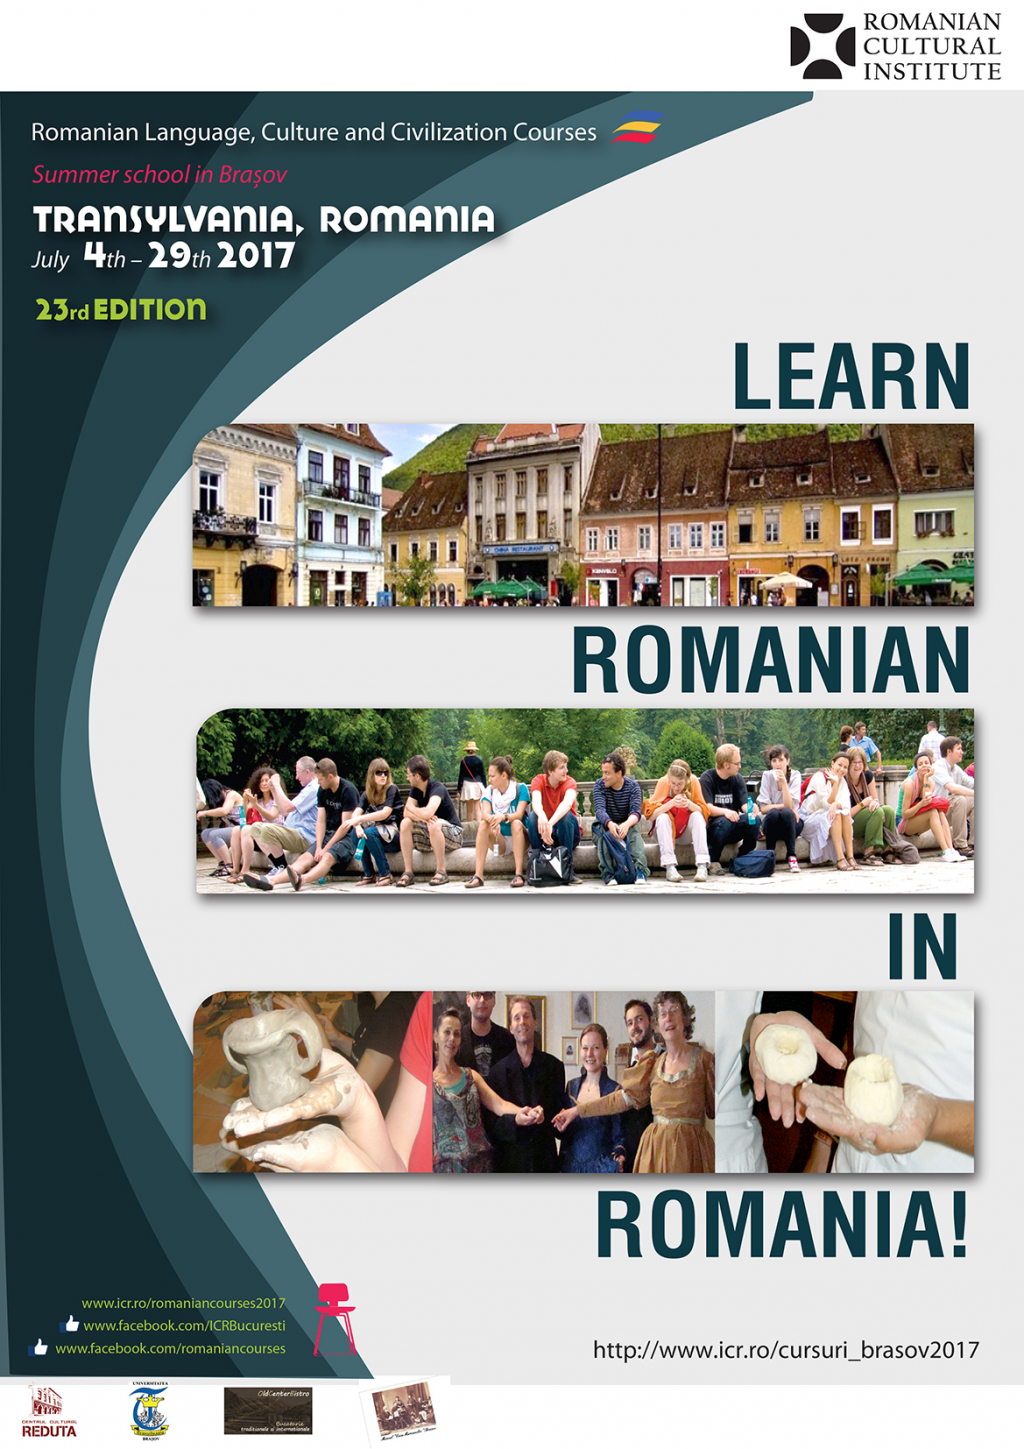 Learn Romanian in Romania!